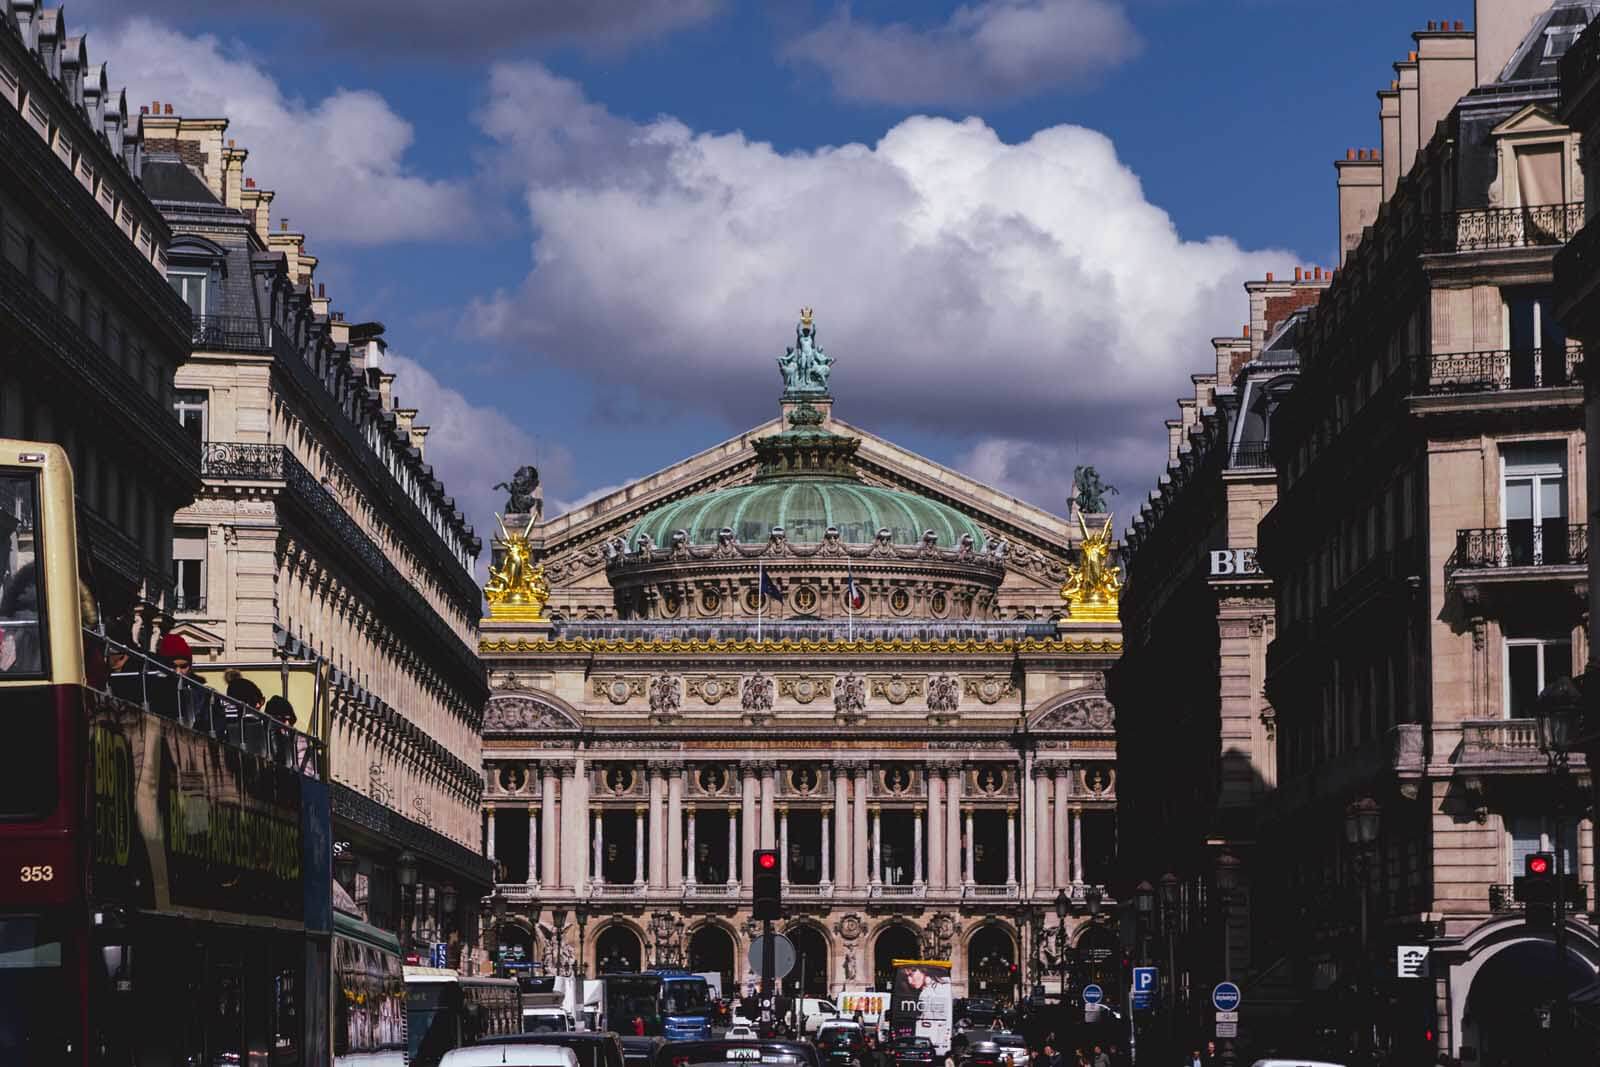 palais garnier opera house in Paris